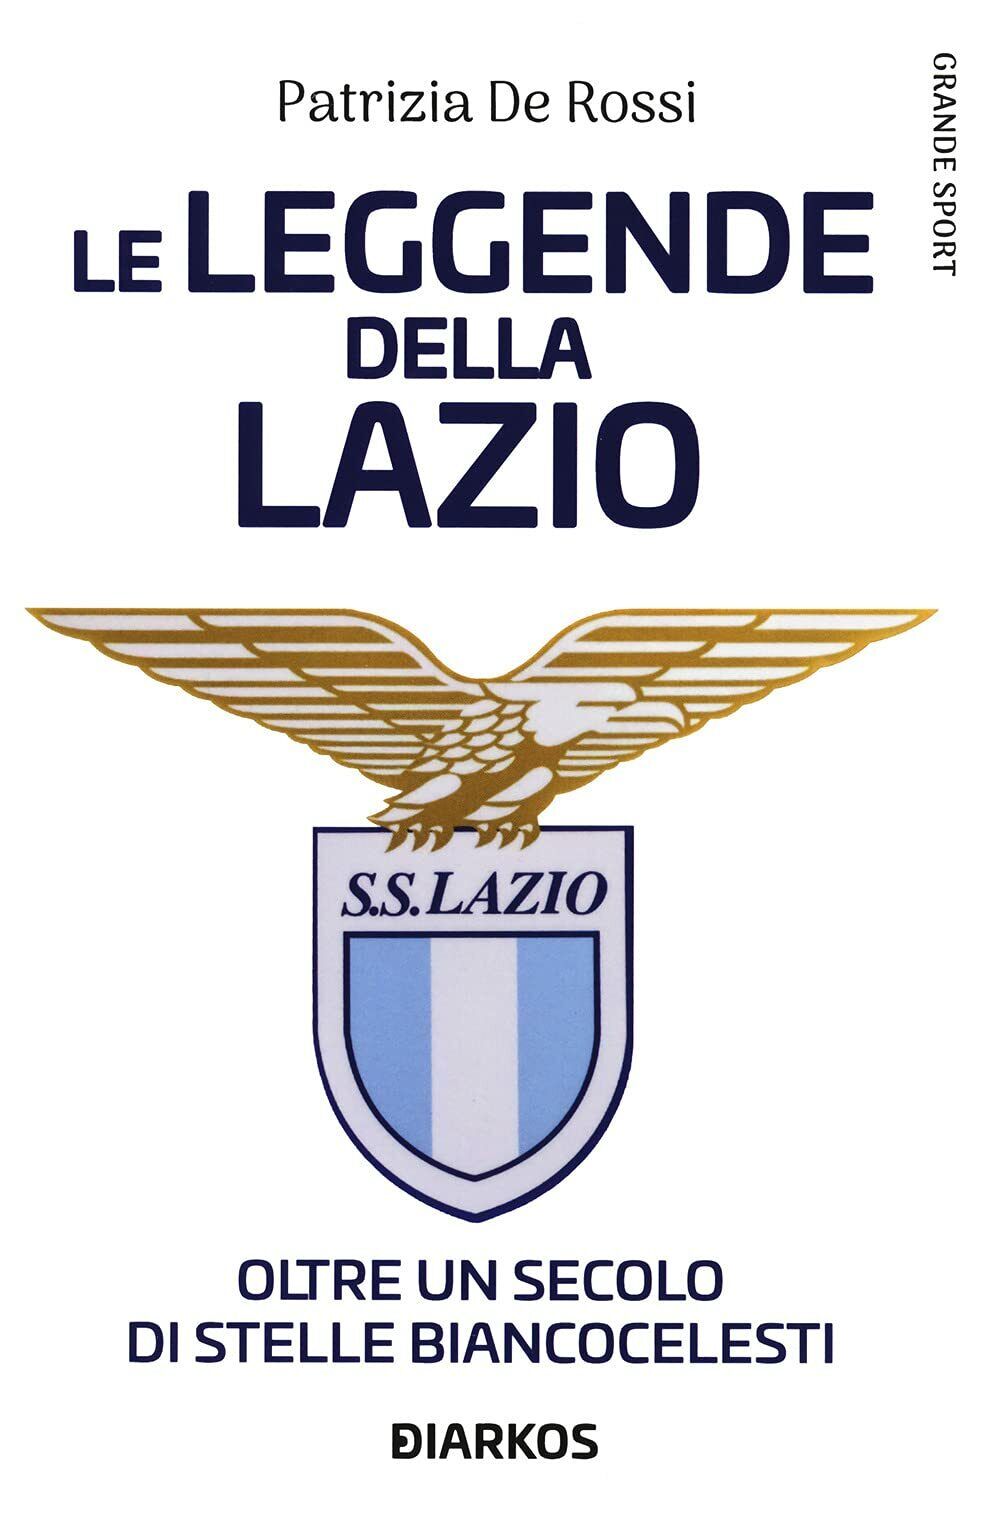 La leggende della Lazio - Patrizia De Rossi - DIARKOS, 2021 libro usato